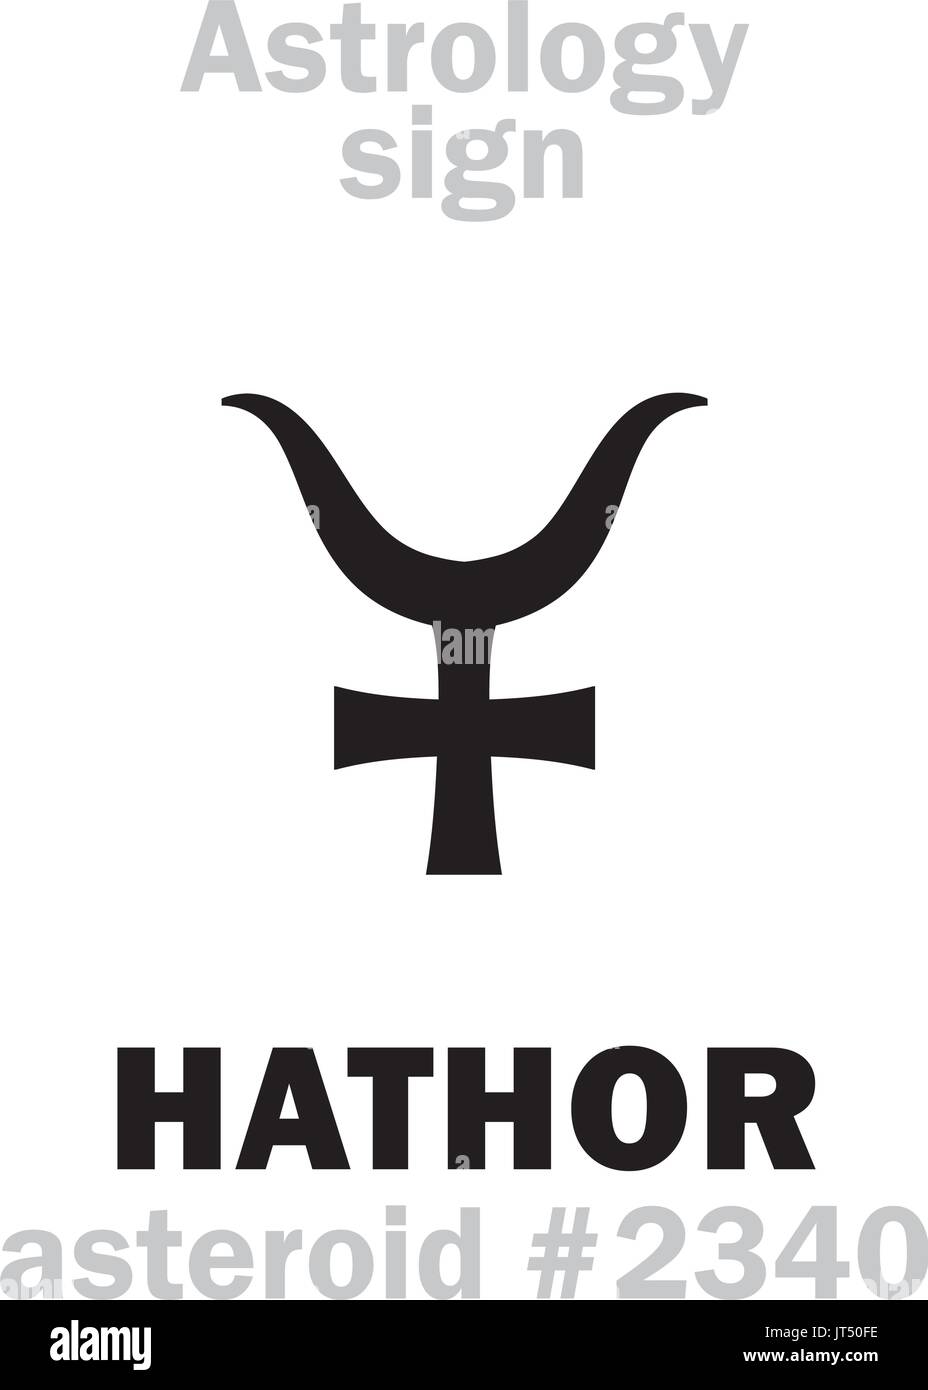 Astrologie-Alphabet: HATHOR (Atheru), Asteroid #2340. Hieroglyphen Charakter Zeichen (einzelnes Symbol). Stock Vektor